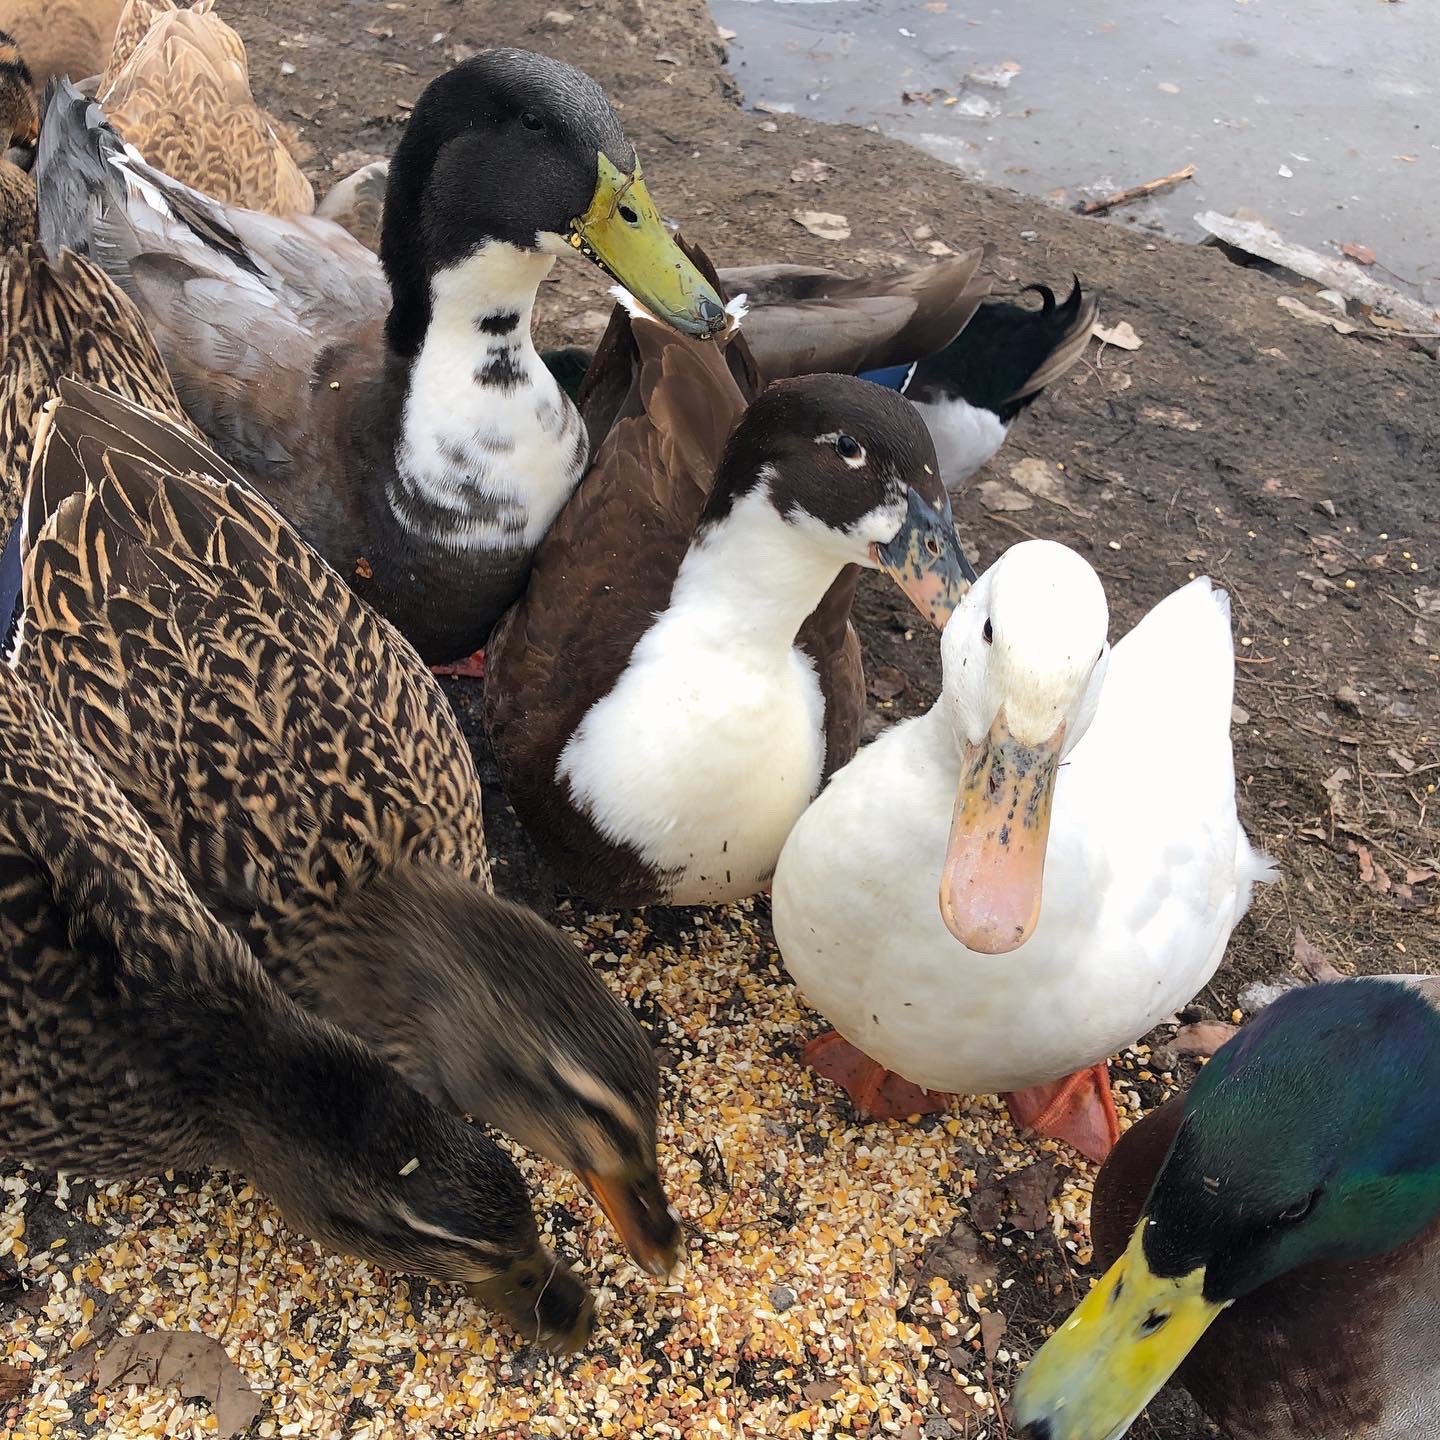 dumped ducks